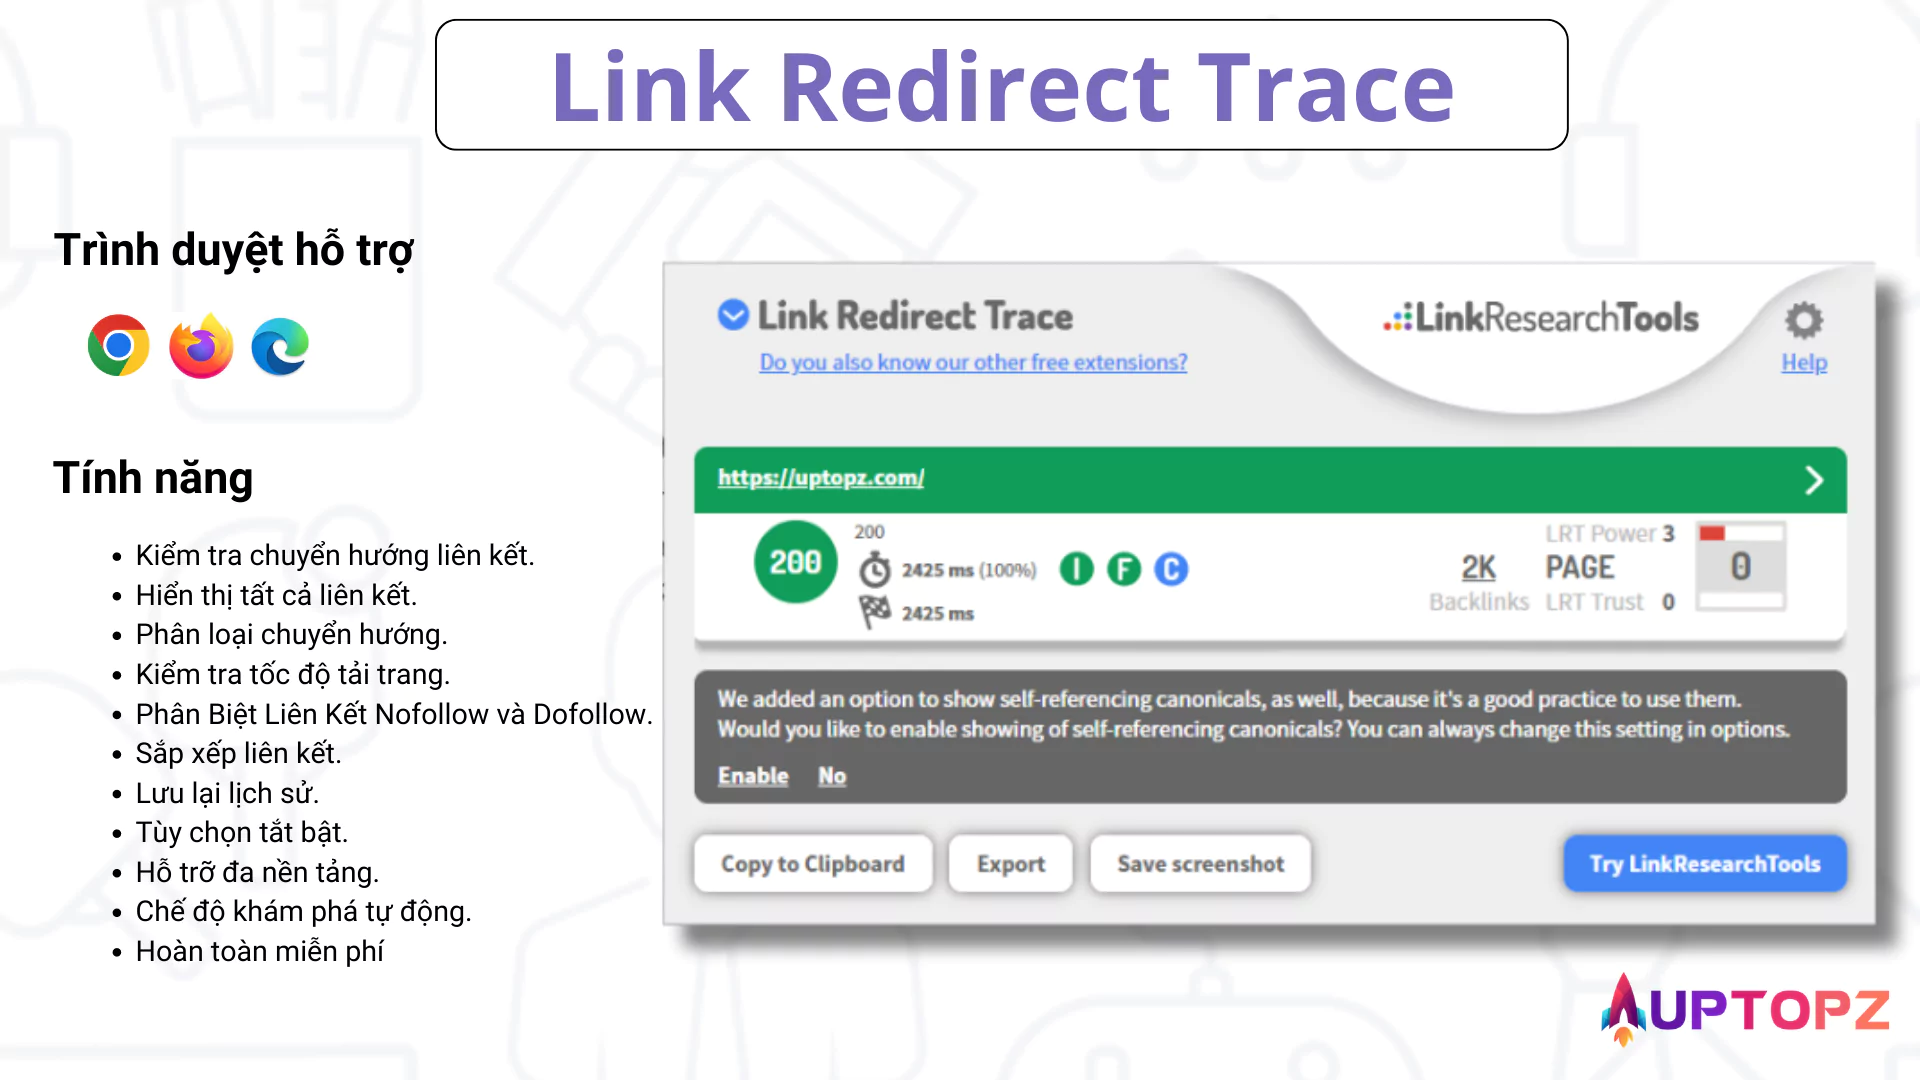 Tiện ích mở rộng trình duyệt Link Redirect Trace